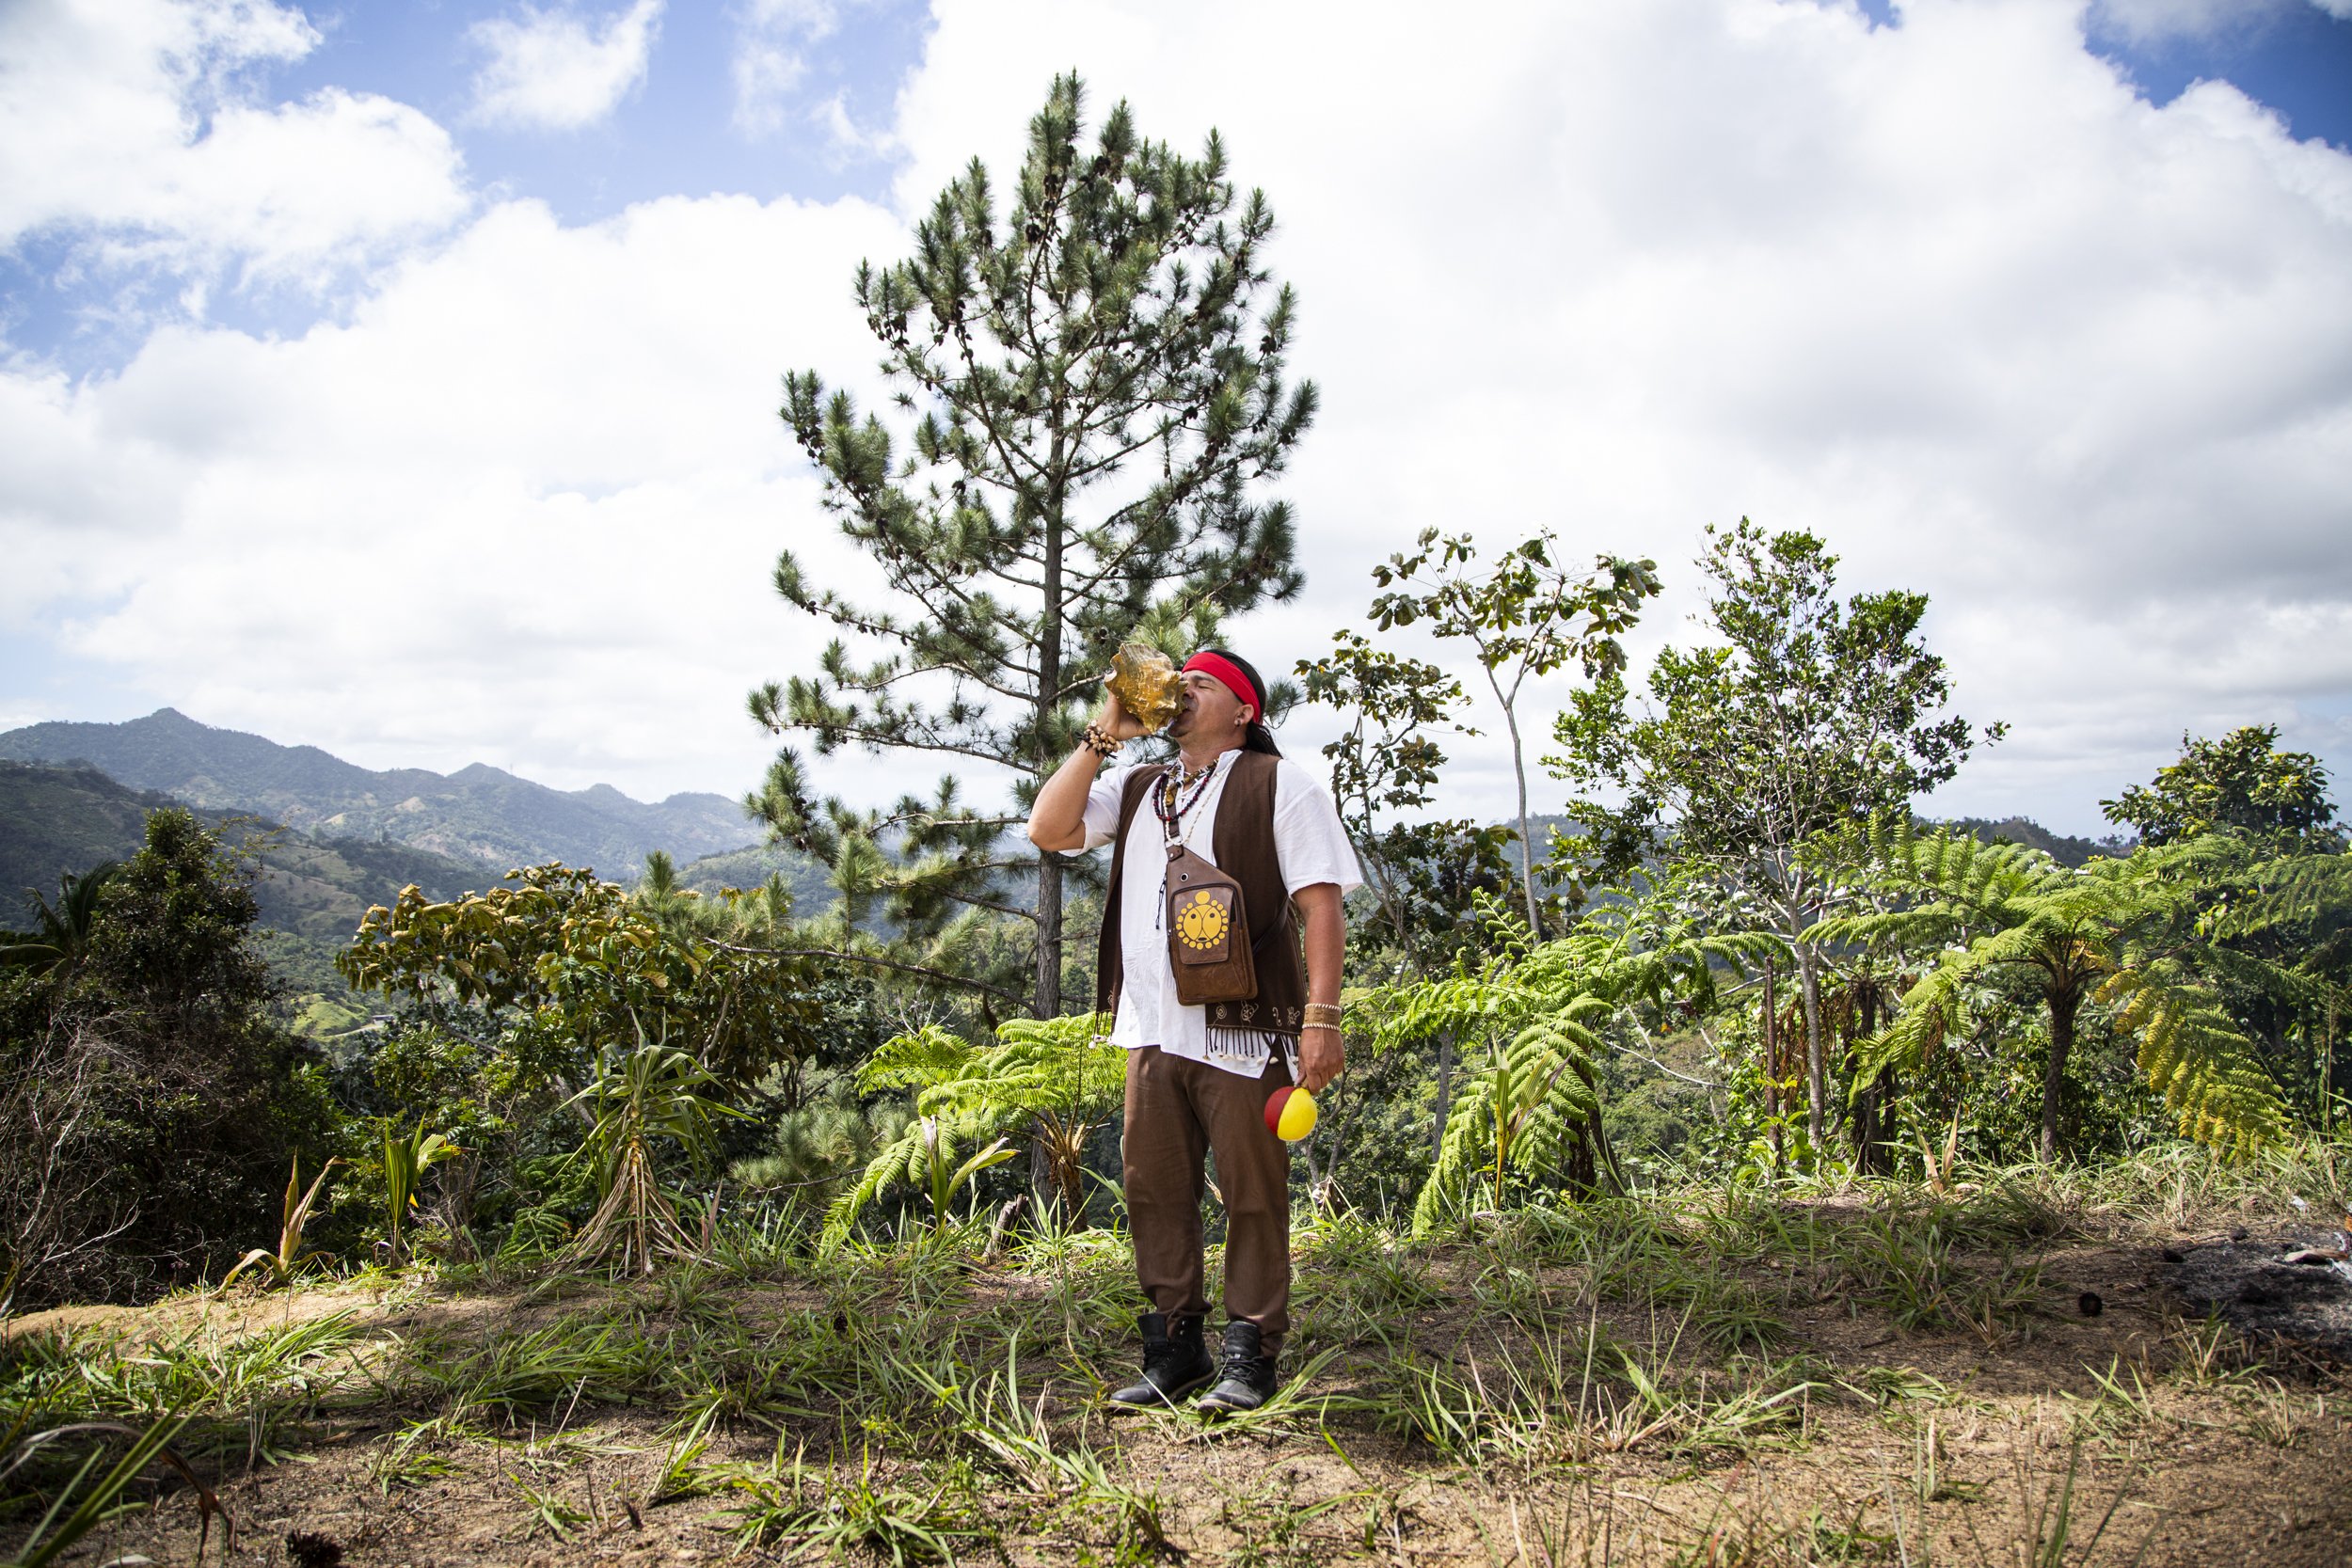  Hurakan Tercer Kan, de la Tribu Kaniba Tuun, ceremonia de inauguración de una casa comunal, en Limaní (lugar de muchas aguas), con la orientación y apoyo de Edwin Marcucci y Familia. Adjuntas, Borikén (Puerto Rico). Febrero de 2021.   Foto de Erika 